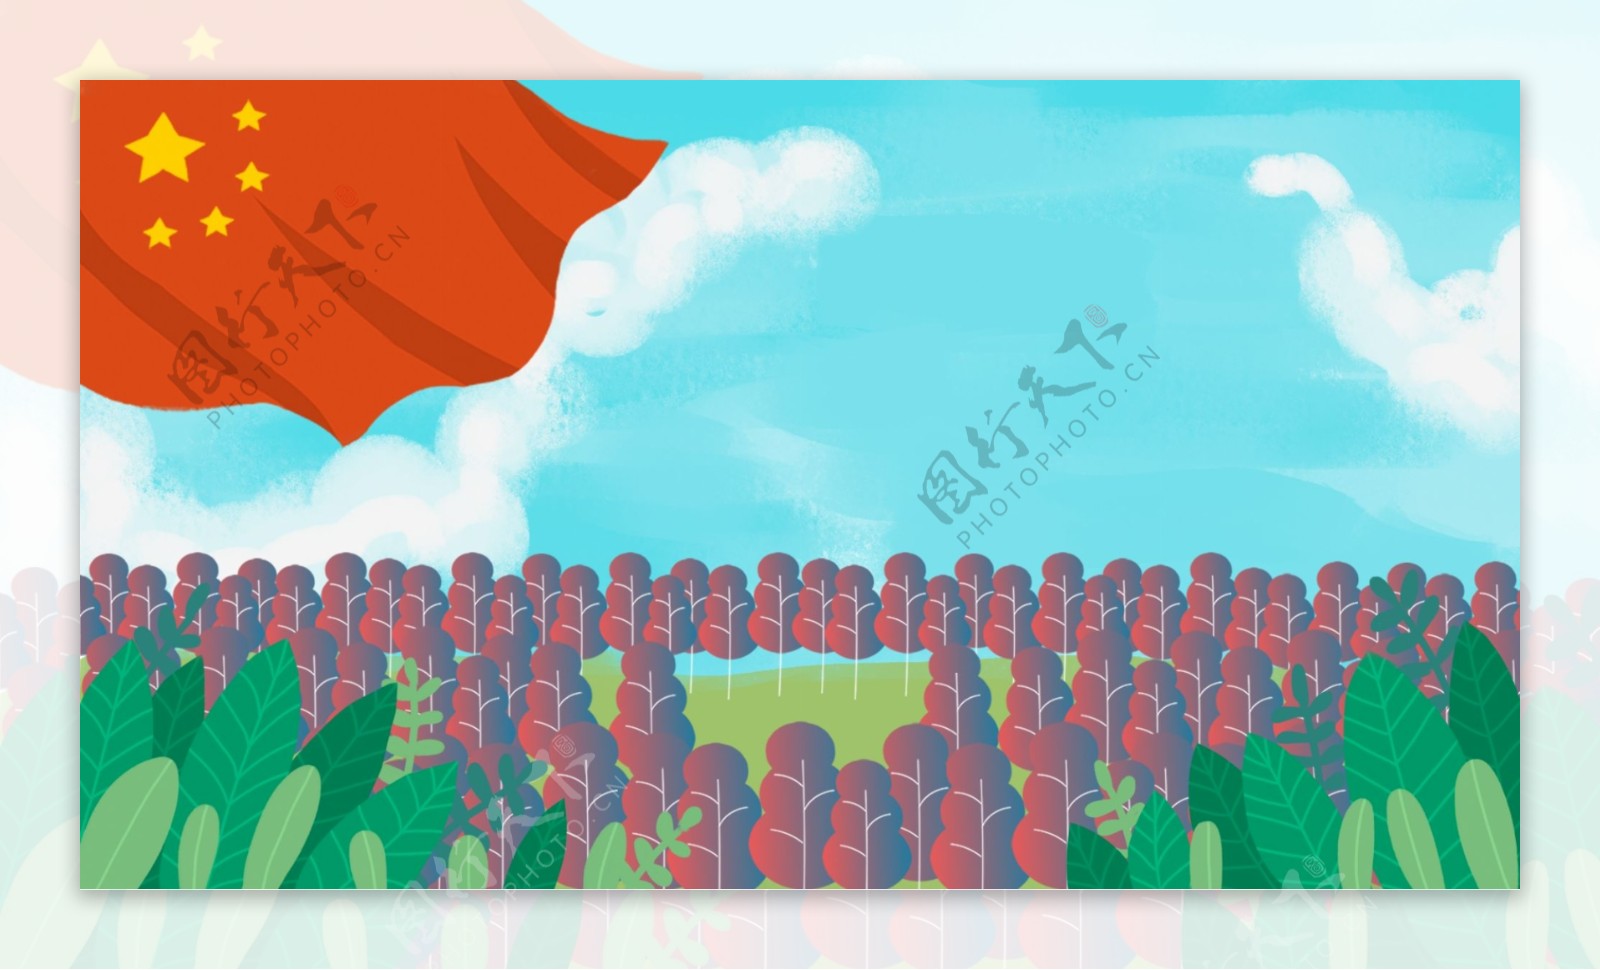 森林上空飘扬的红旗卡通背景